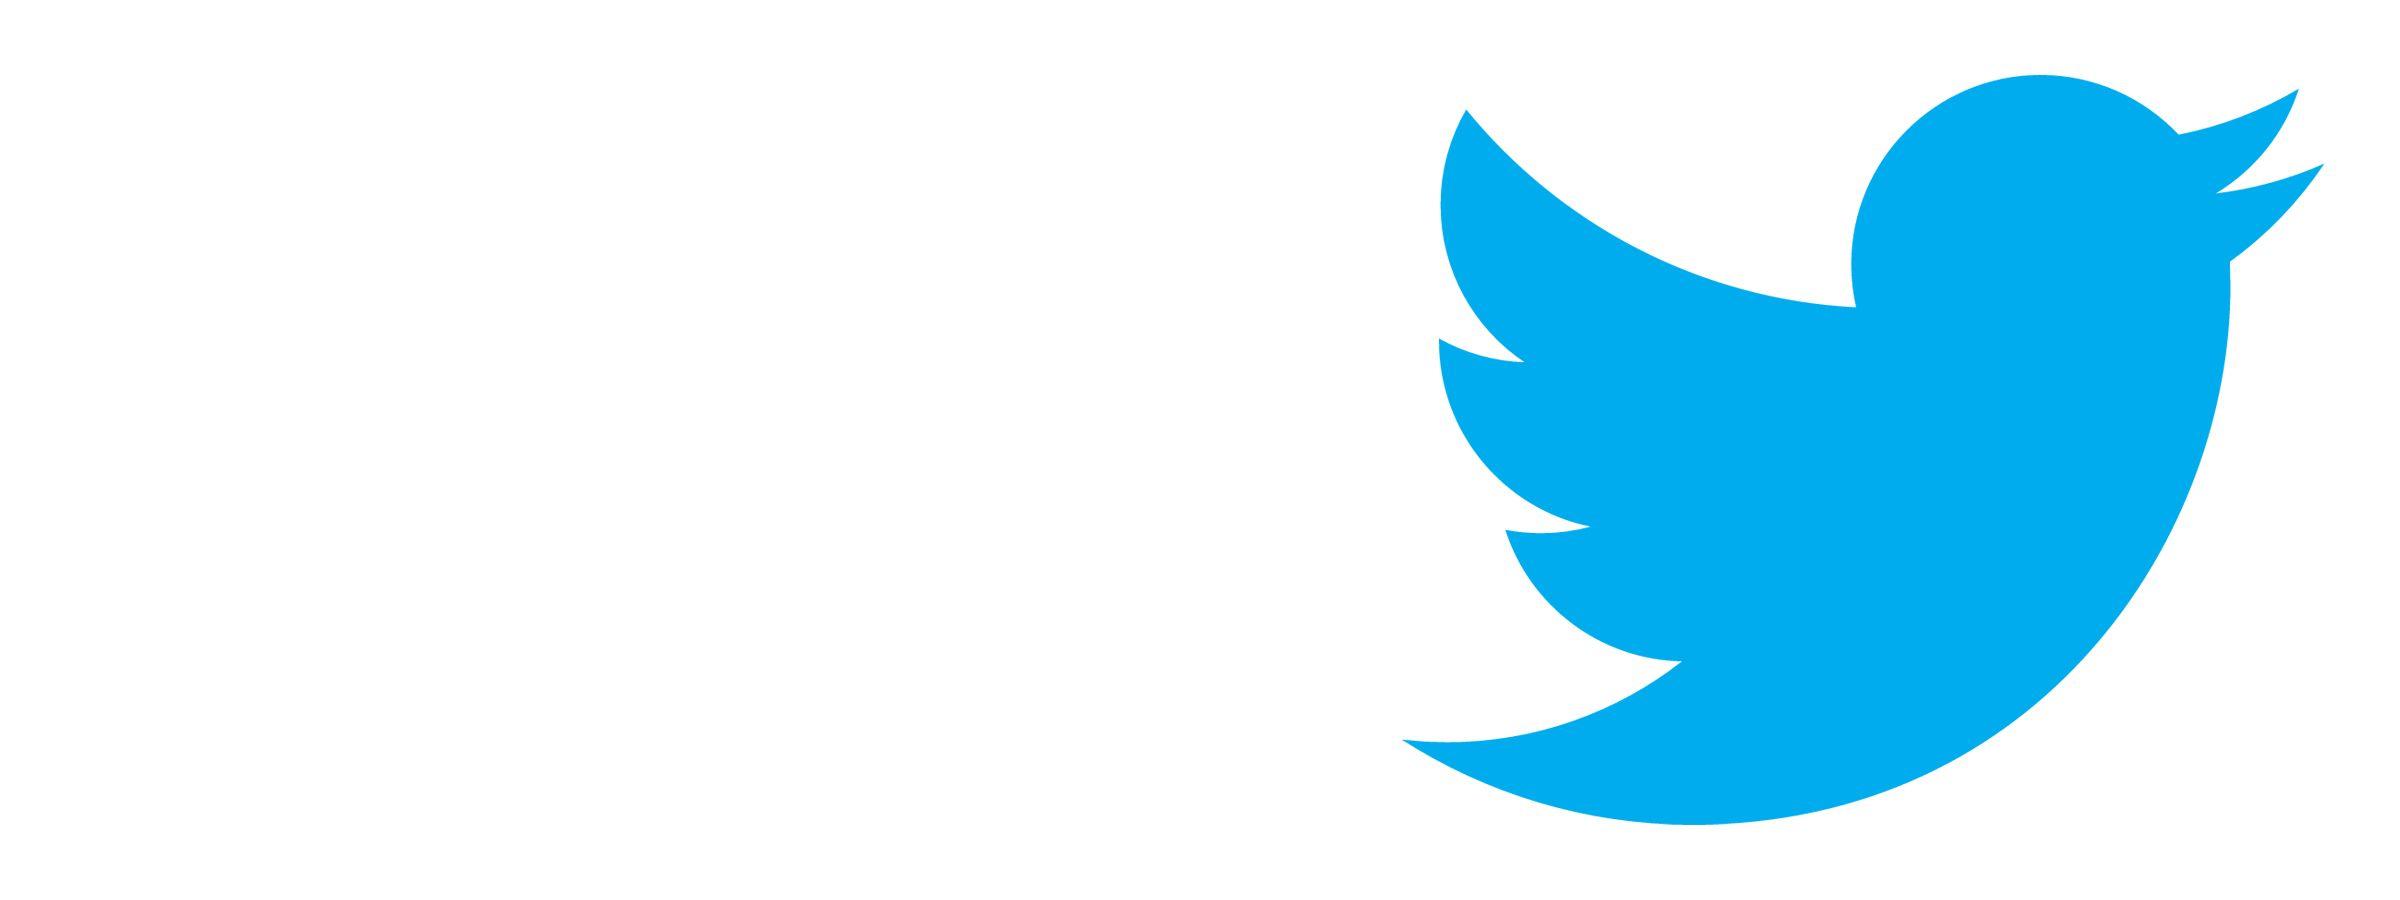 New Twitter Logo - Twitter Trademark a Trending Topic